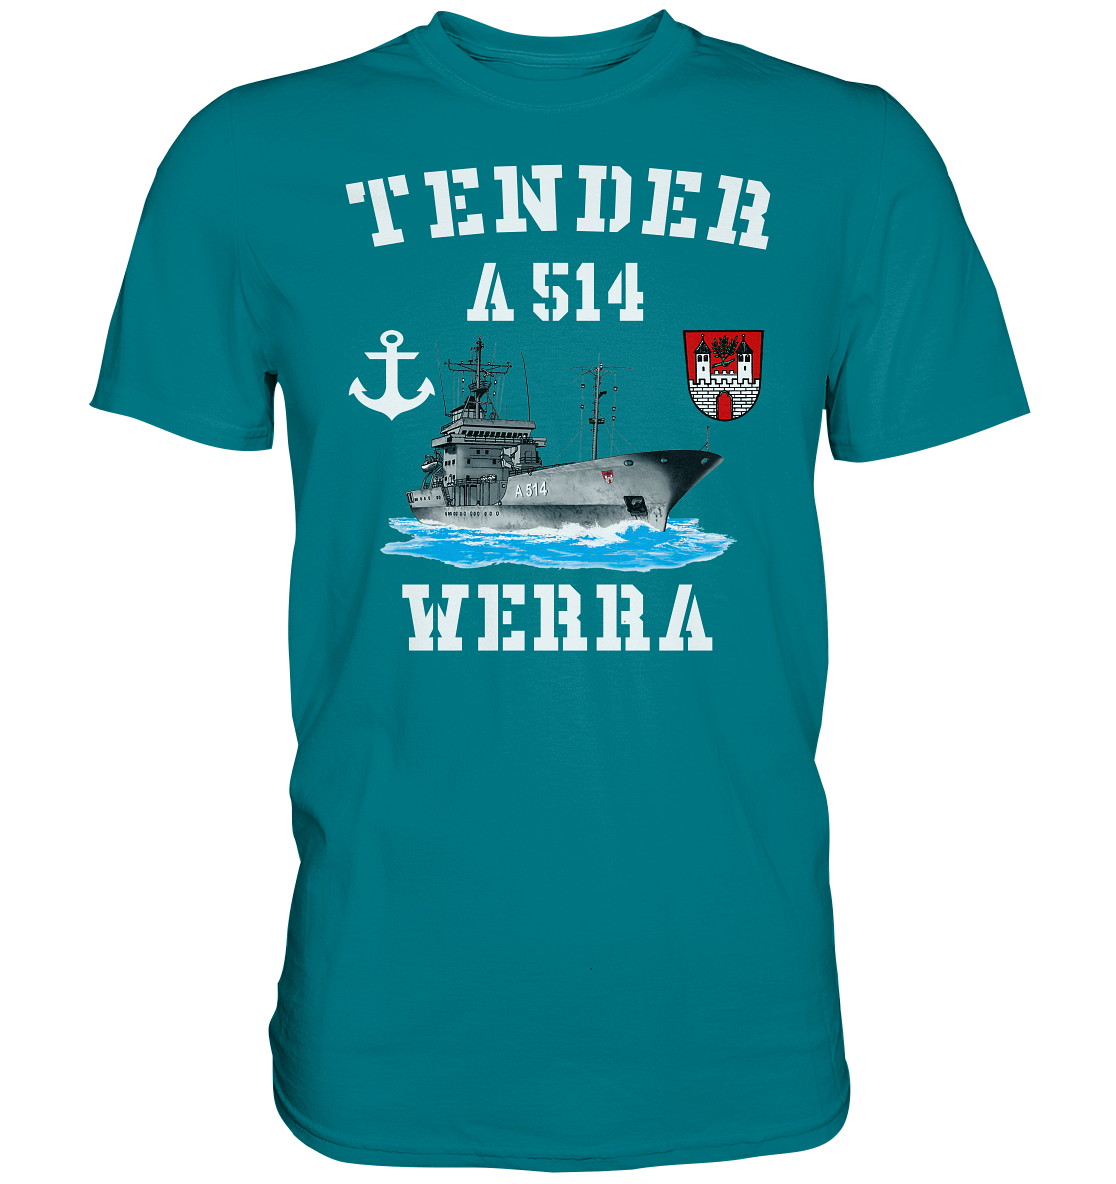 Tender A514 WERRA Anker - Premium Shirt